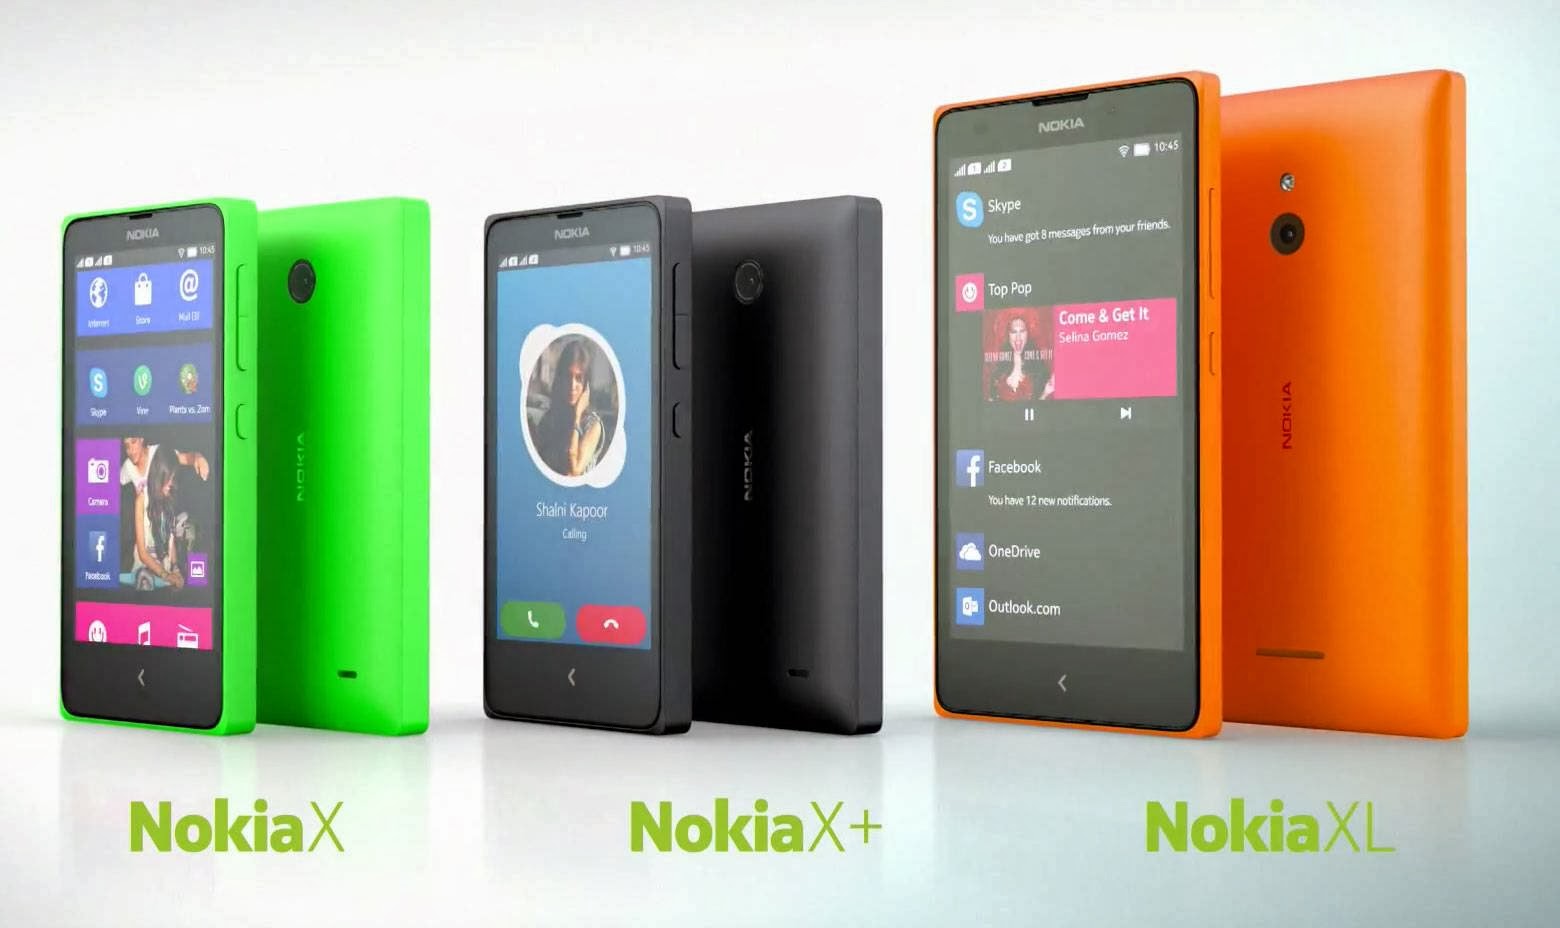 Nokia XL, Nokia X+ Plus and Nokia X